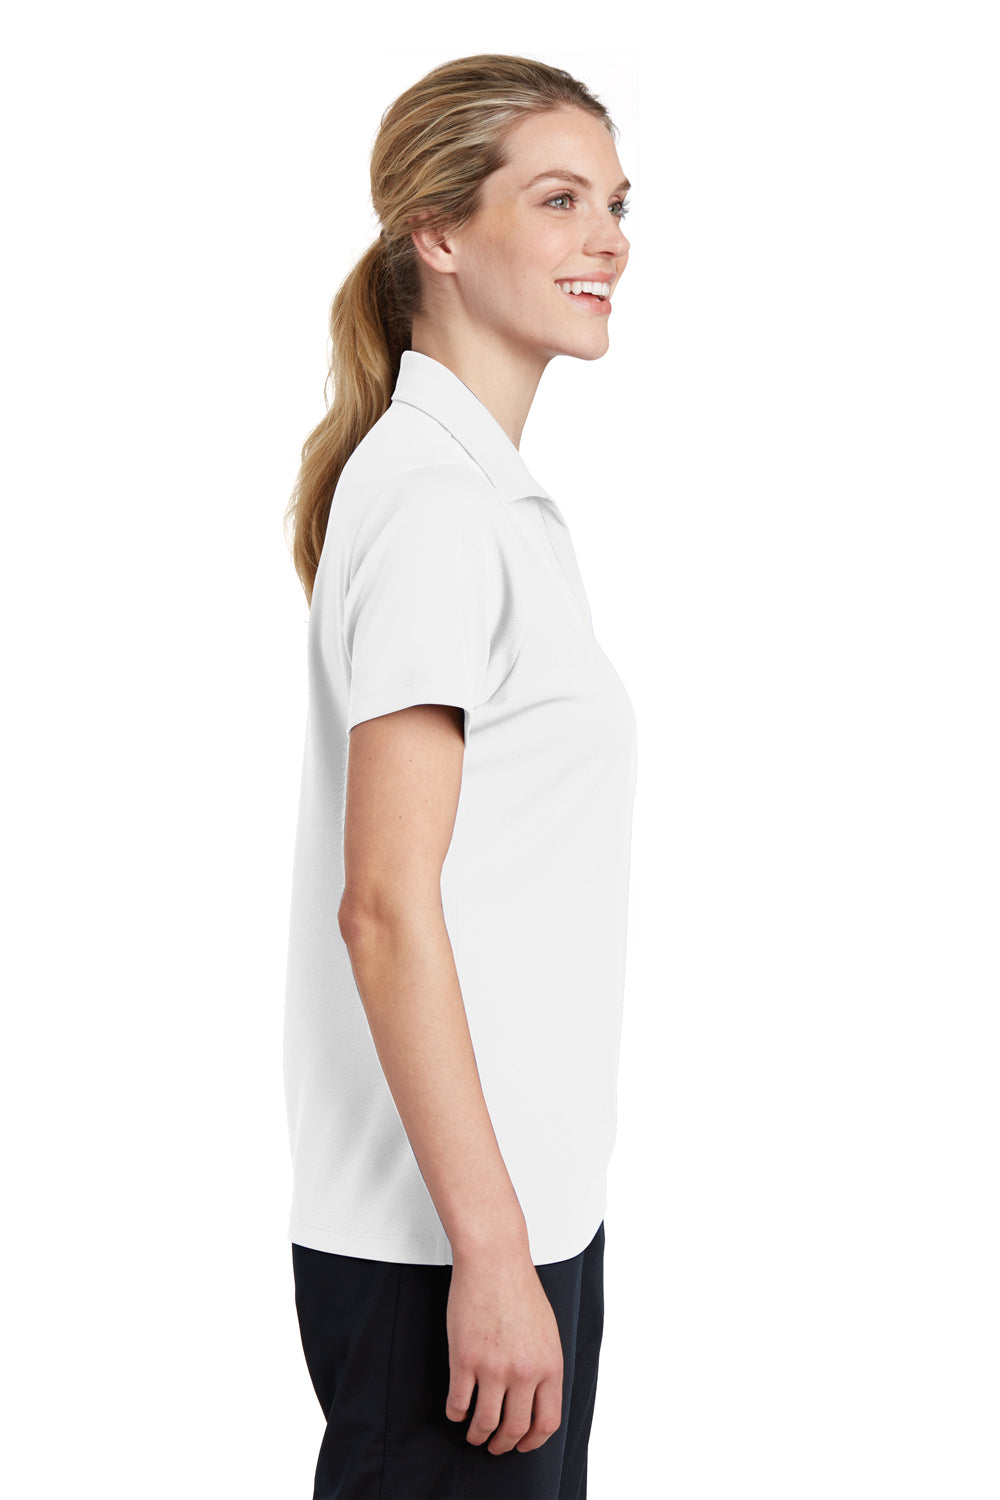 Sport-Tek LST640 Womens RacerMesh Moisture Wicking Short Sleeve Polo Shirt White Side